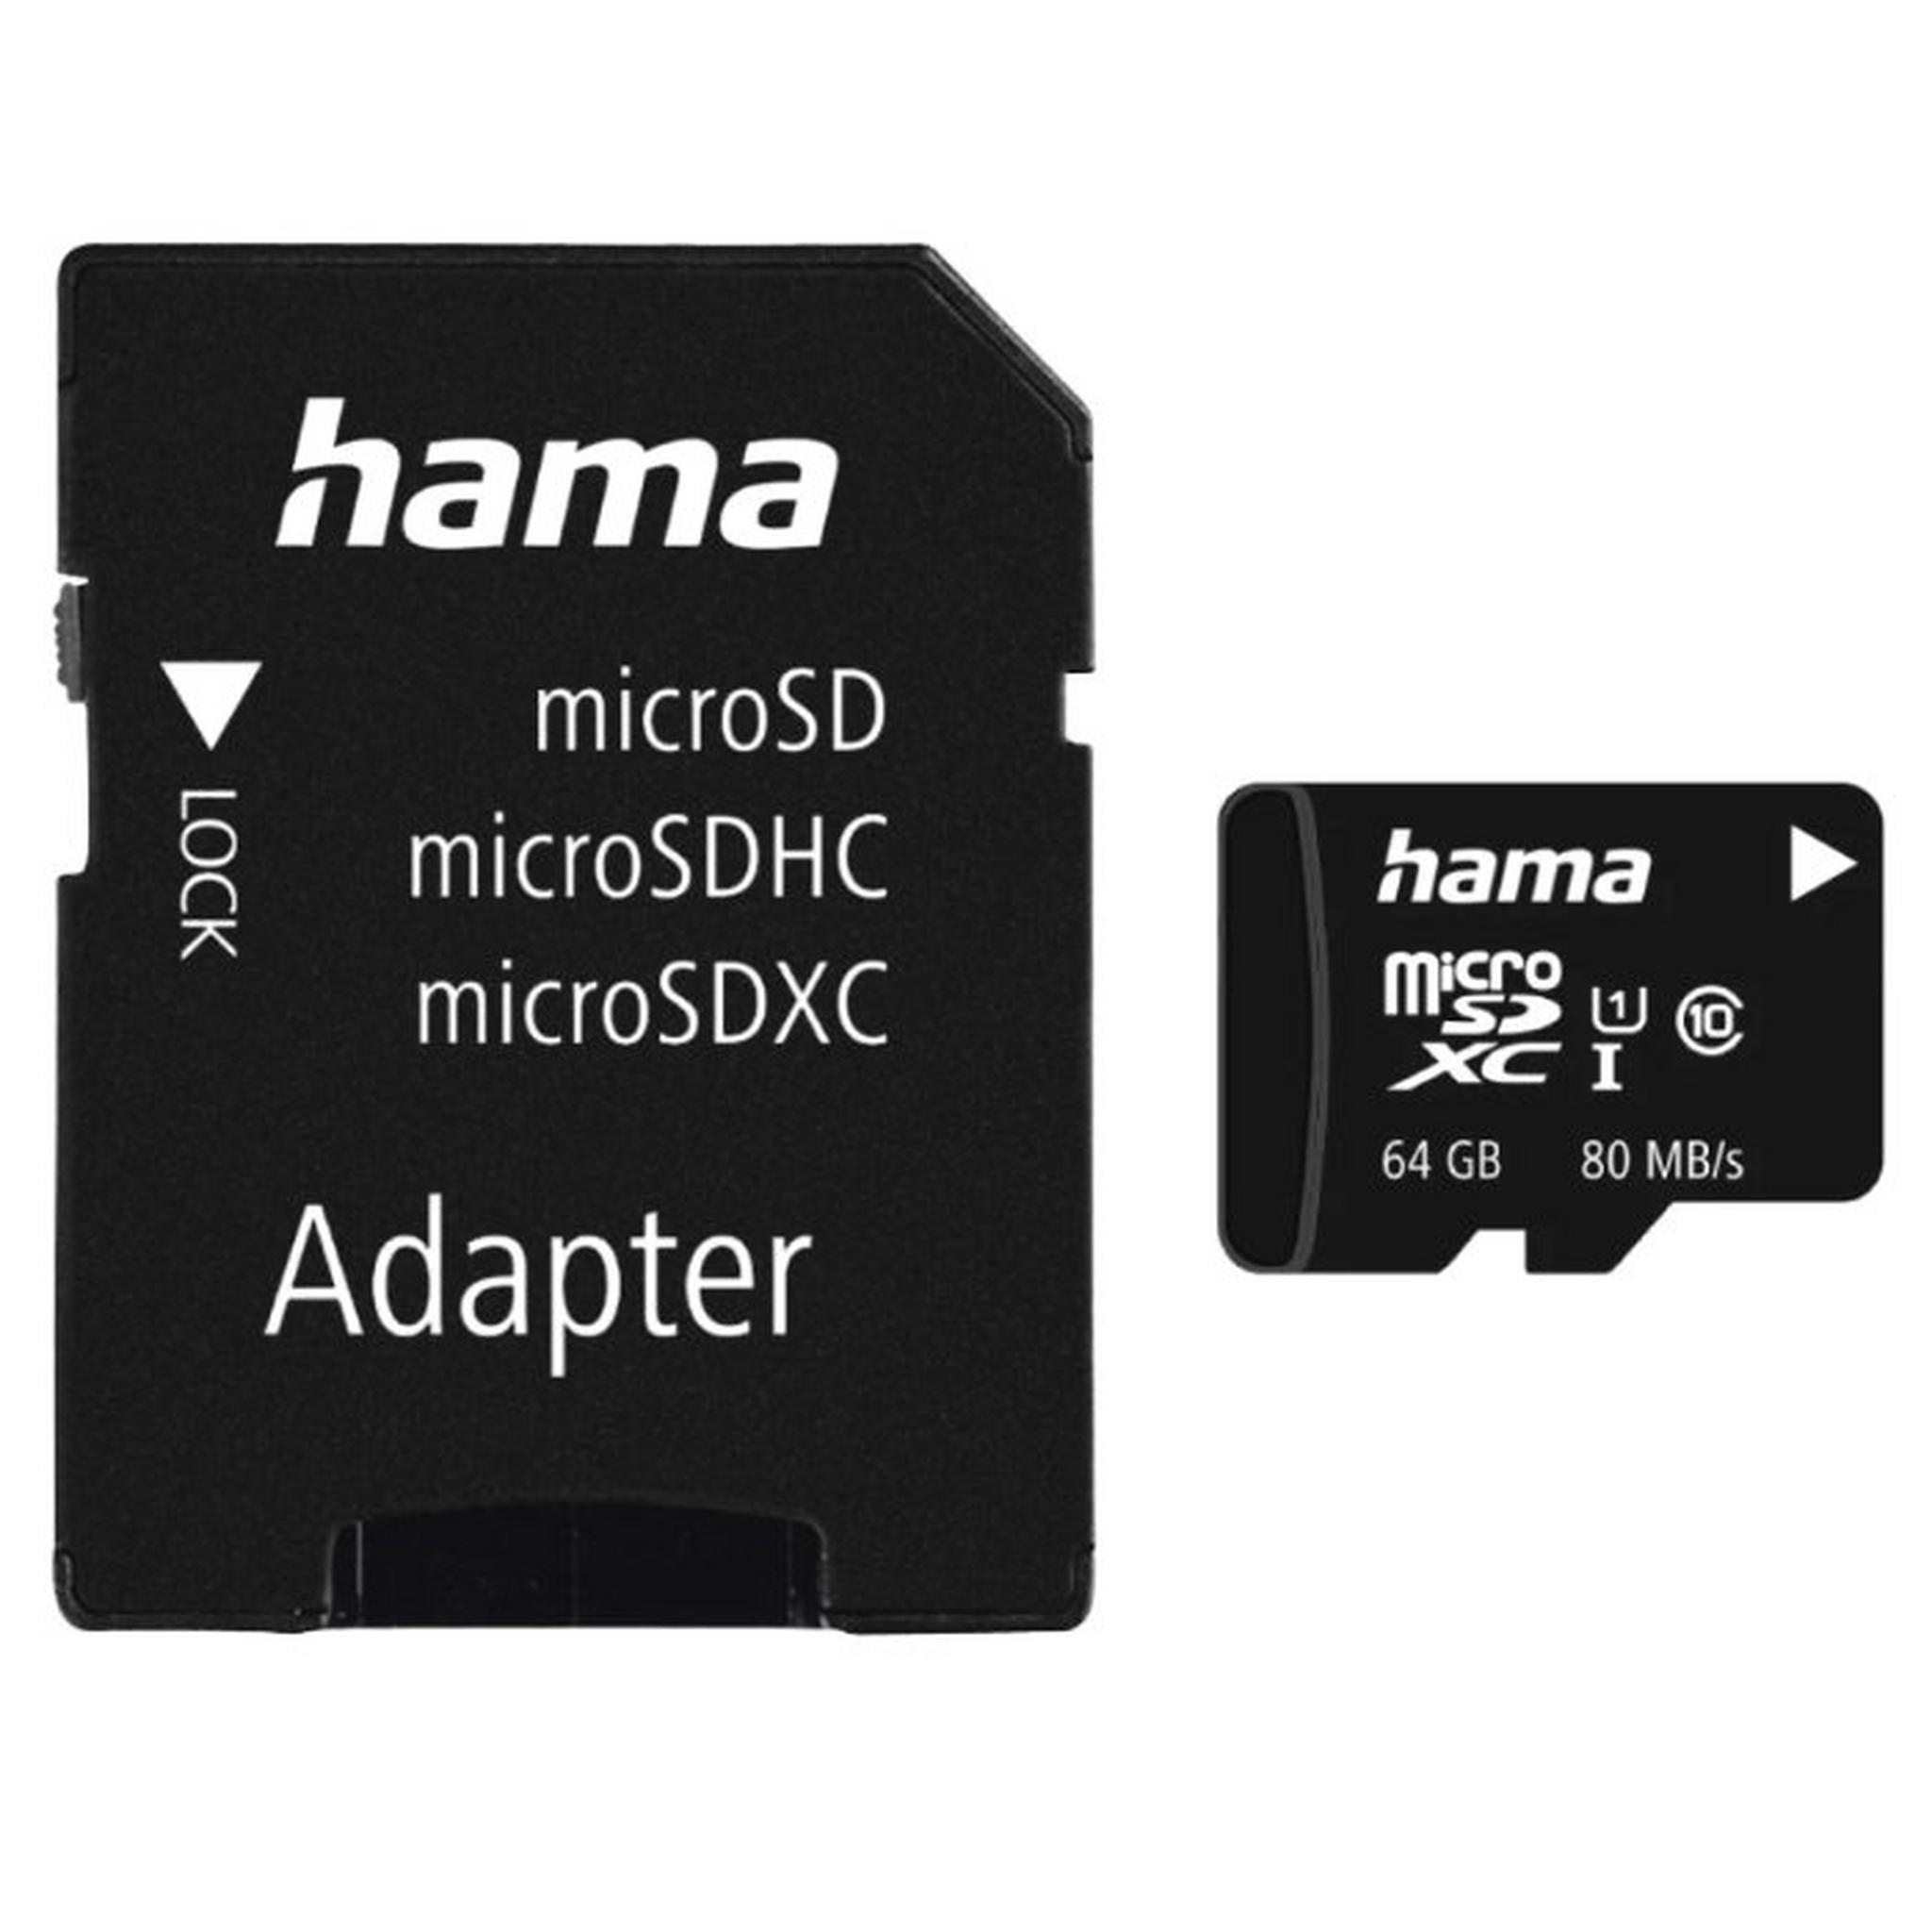 بطاقة ذاكرة هاما مايكروSDXC فئة 10 بتقنية UHS-I  ، سعة 64 جيجابايت